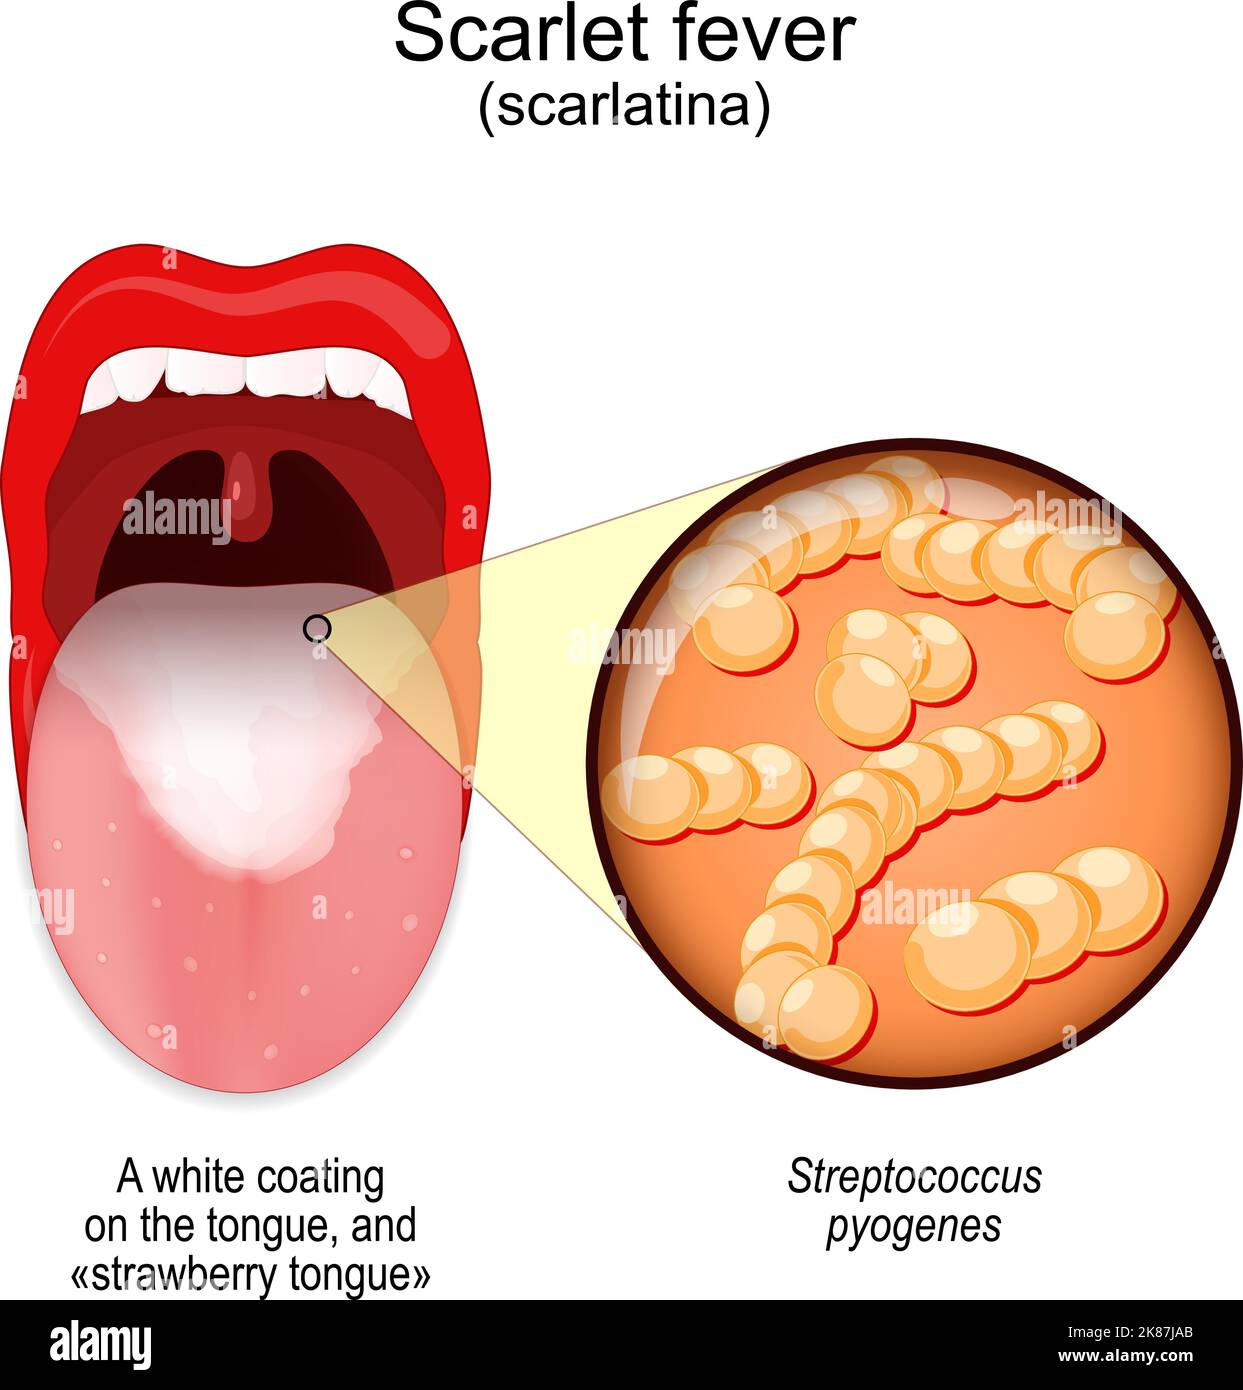 Fièvre de la scarlatine. Symptômes de la scarlatina. Bouche avec revêtement blanc sur la langue, et «langue fraise». Gros plan de Streptococcus pyogenes. Bactéries Illustration de Vecteur